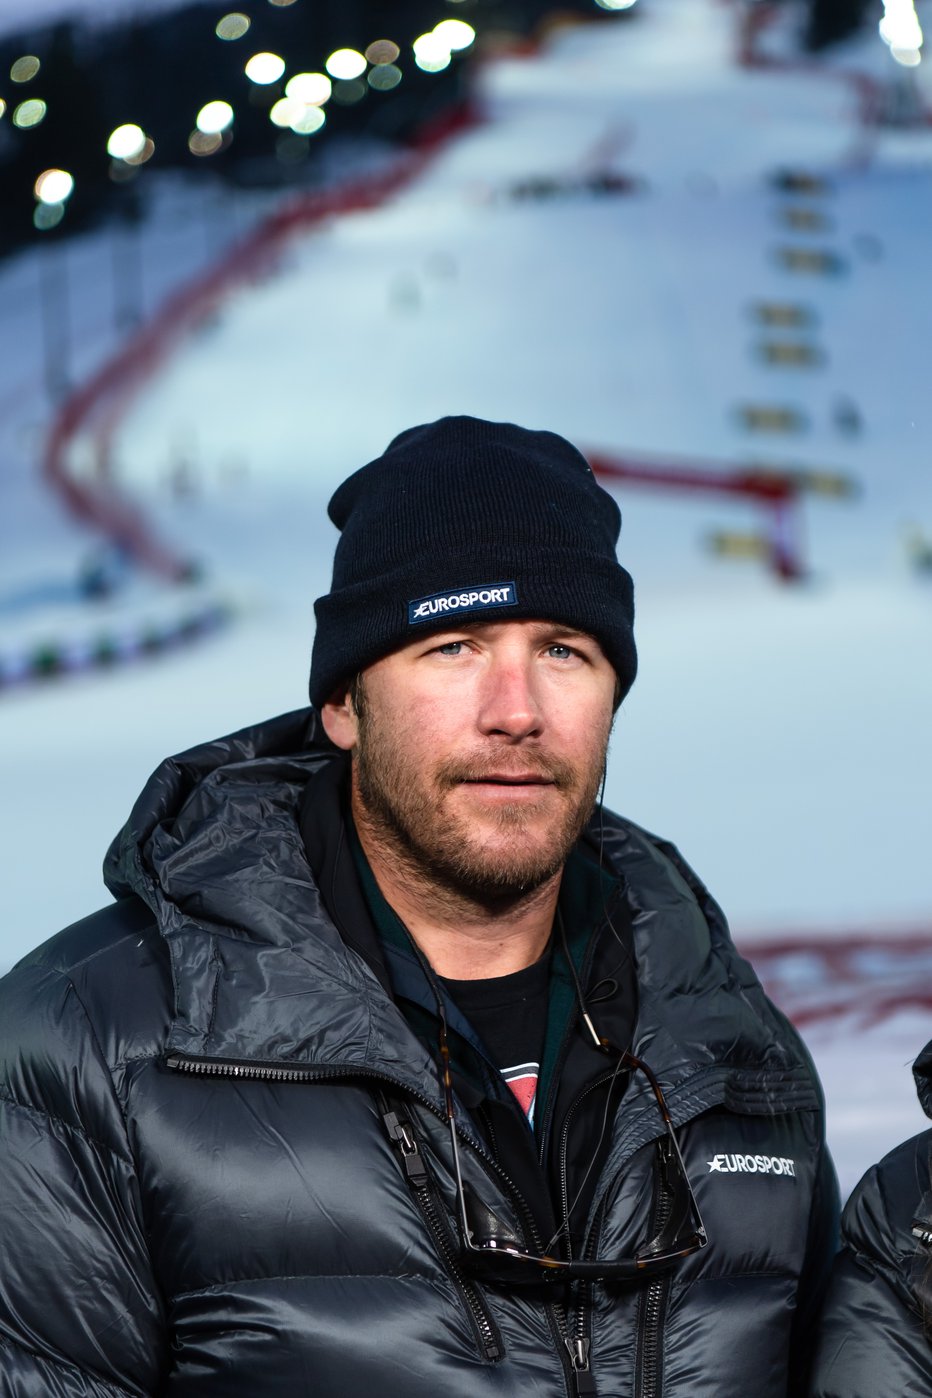 Fotografija: Ameriški smučarski šampion Bode Miller svetovno prvenstvo v Åreju spremlja kot strokovni komentator za Eurosport. FOTO: Reuters